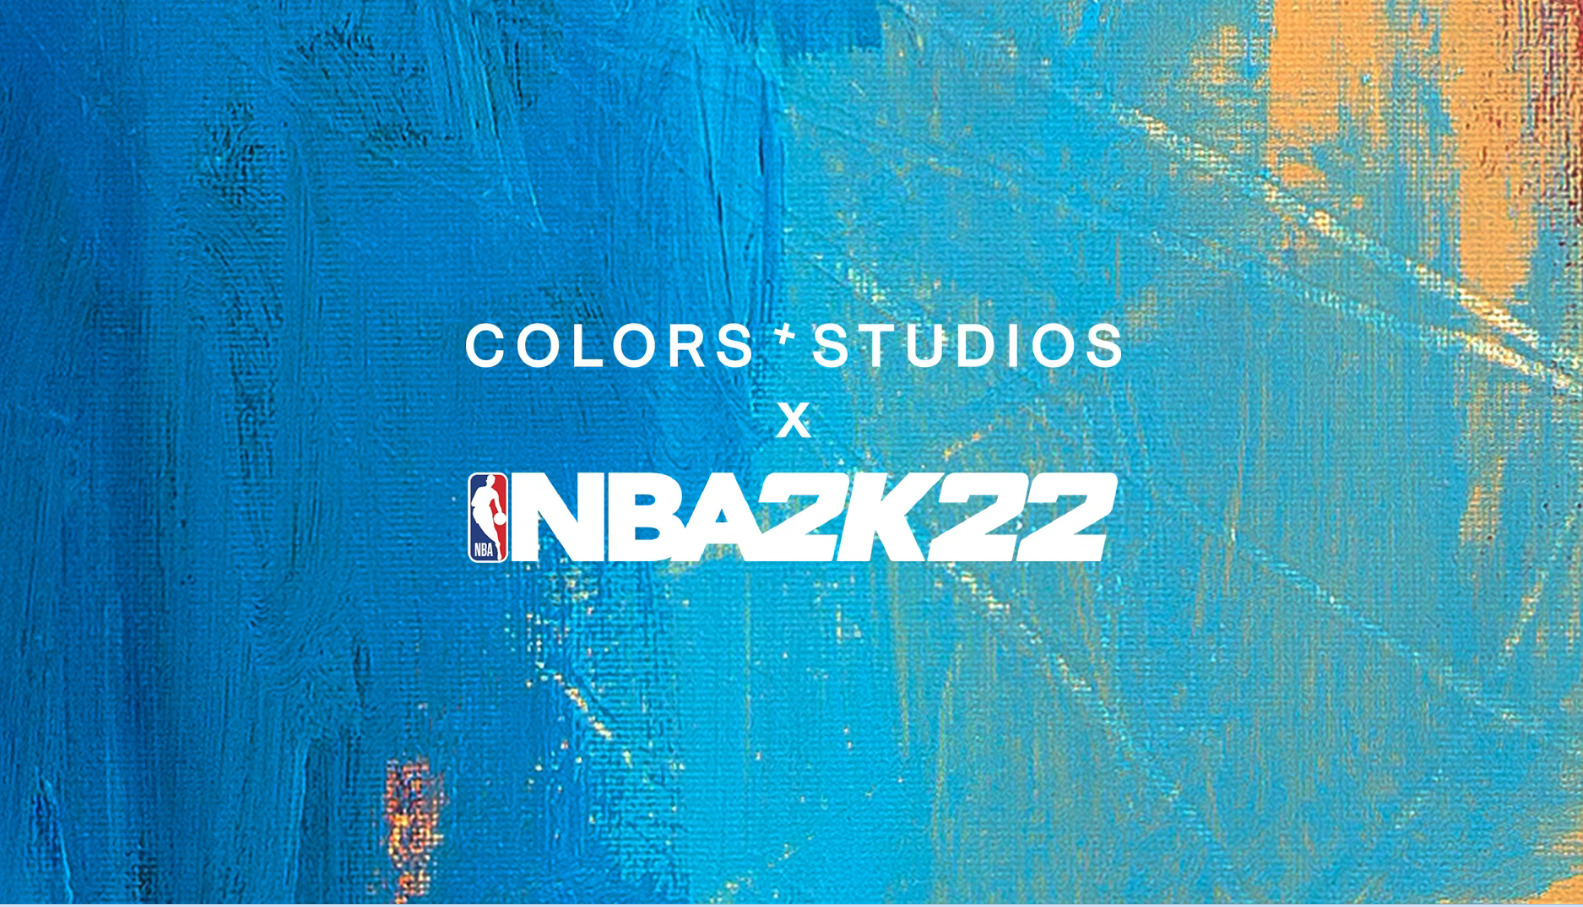 nba 2k22 x colors studios